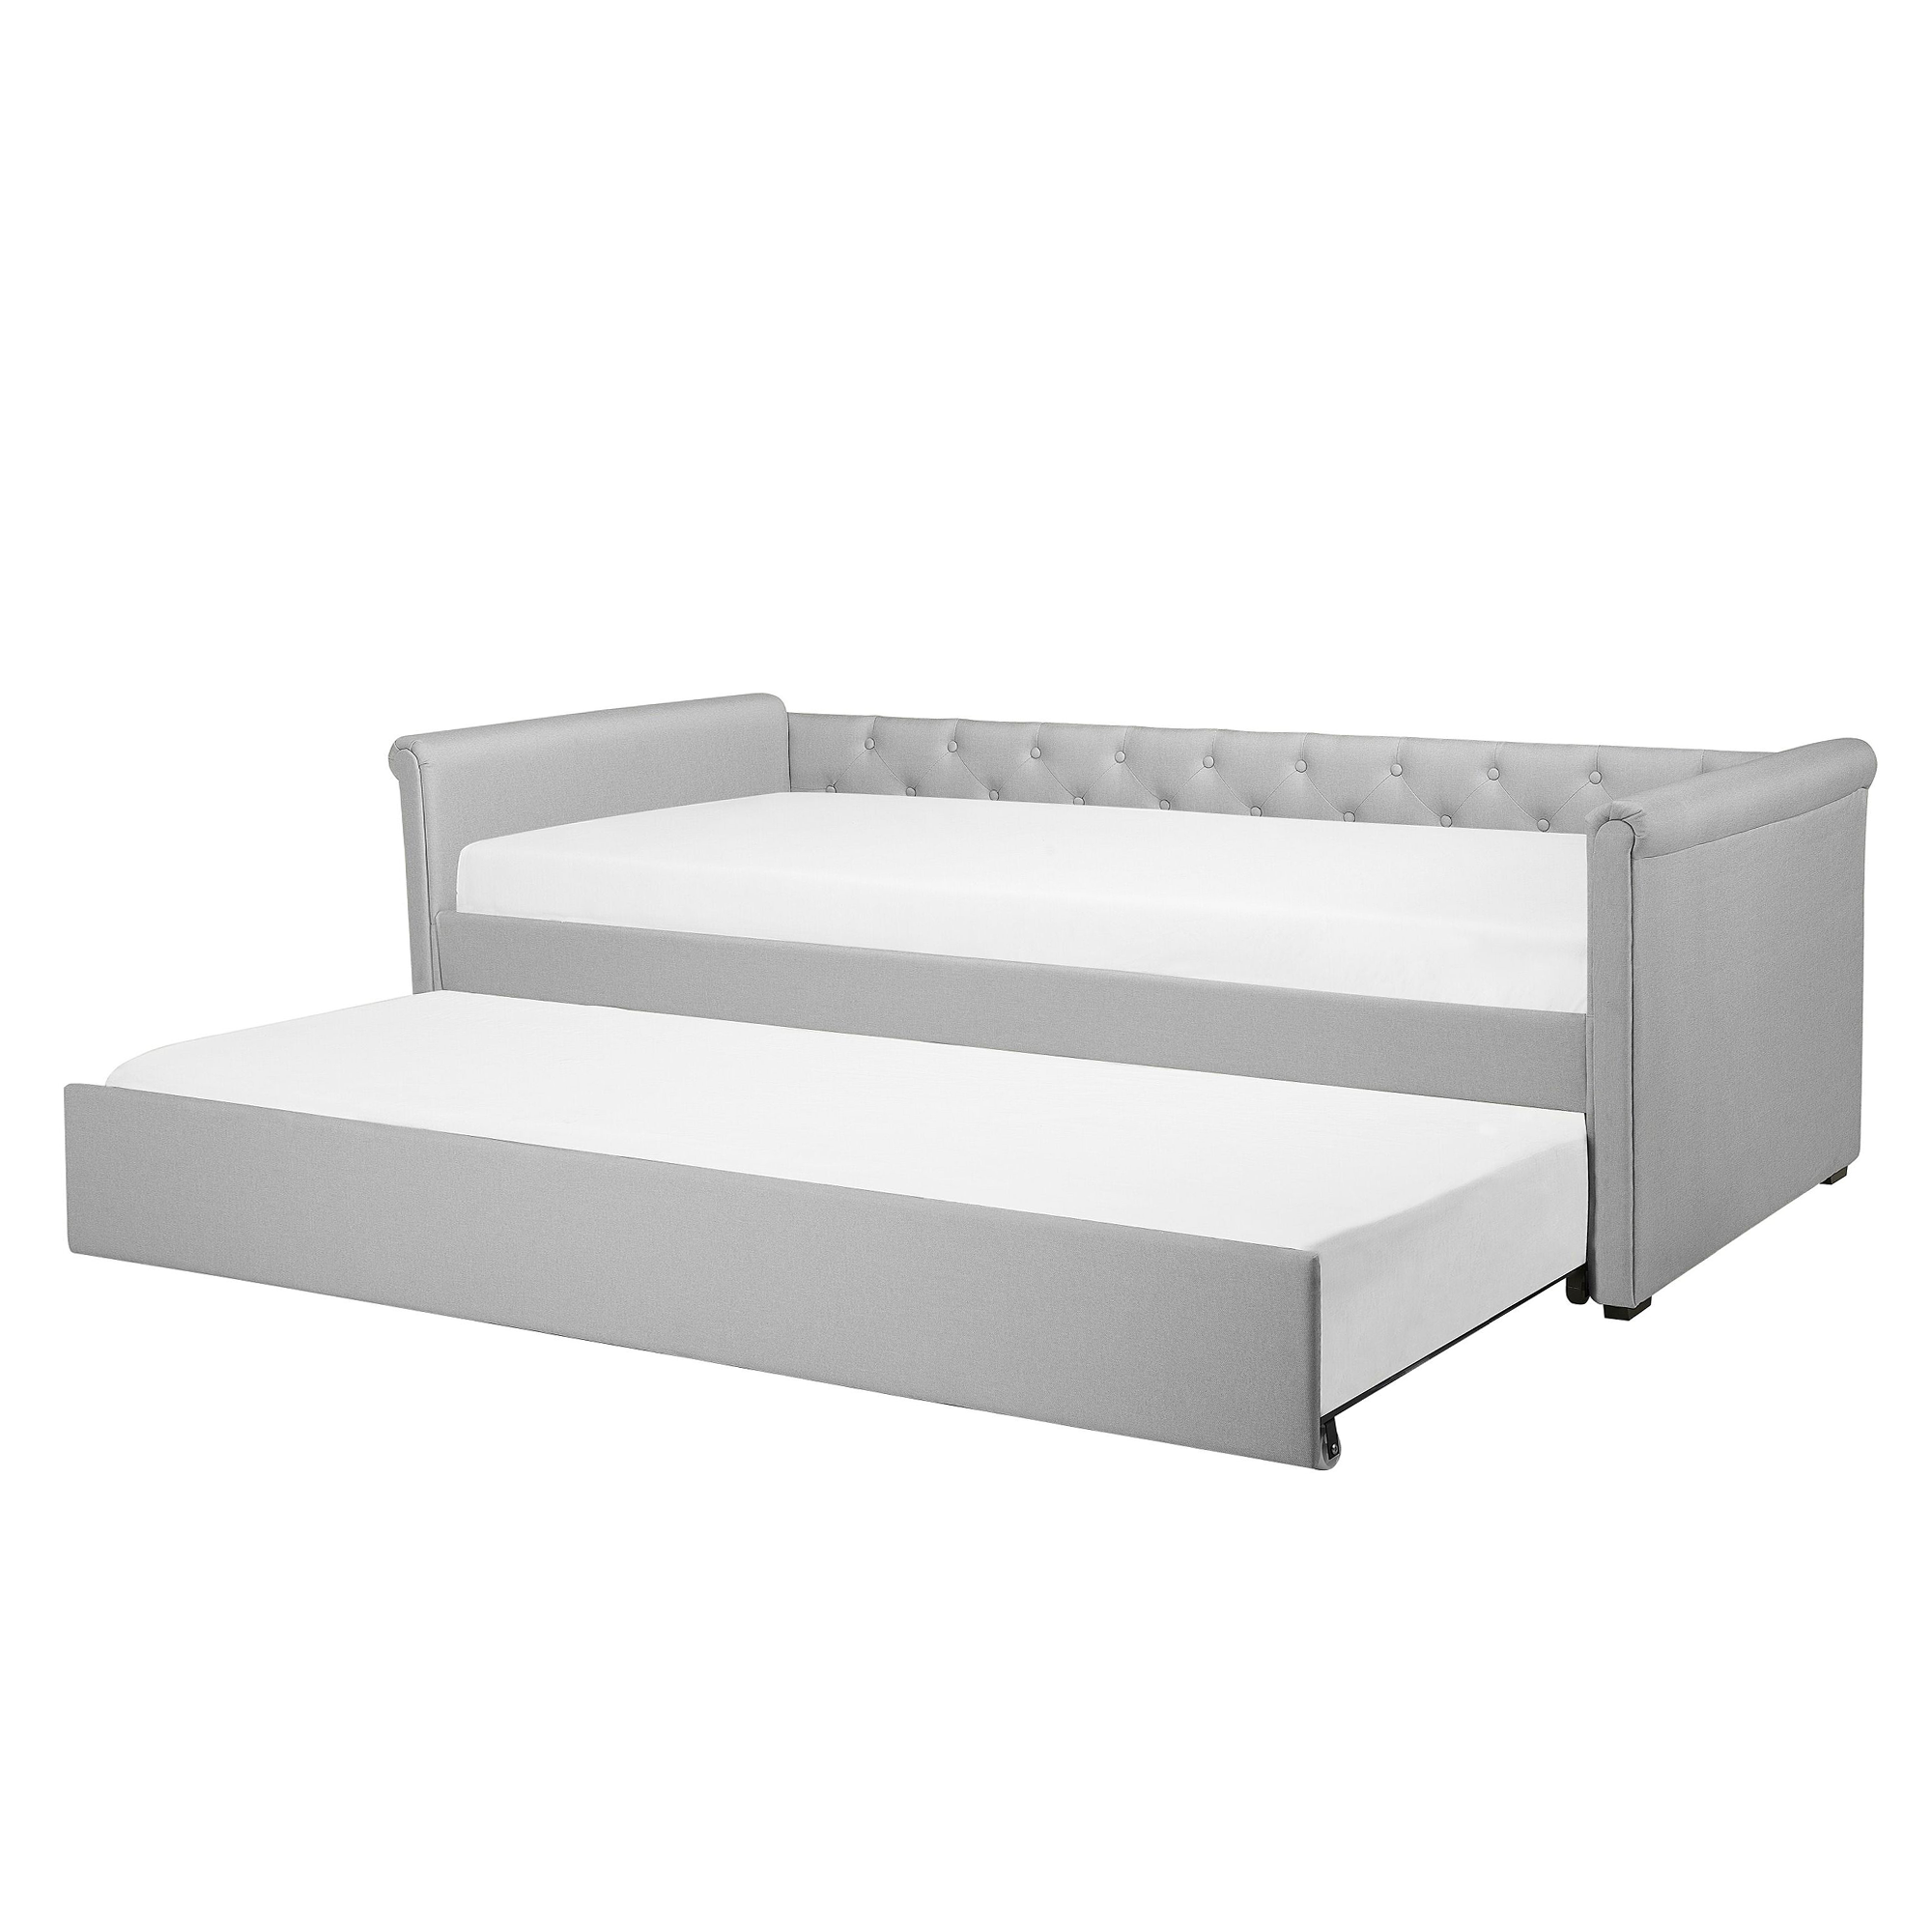 Beliani Rozkládací čalouněná postel 80 x 200 cm světlé šedá LIBOURNE